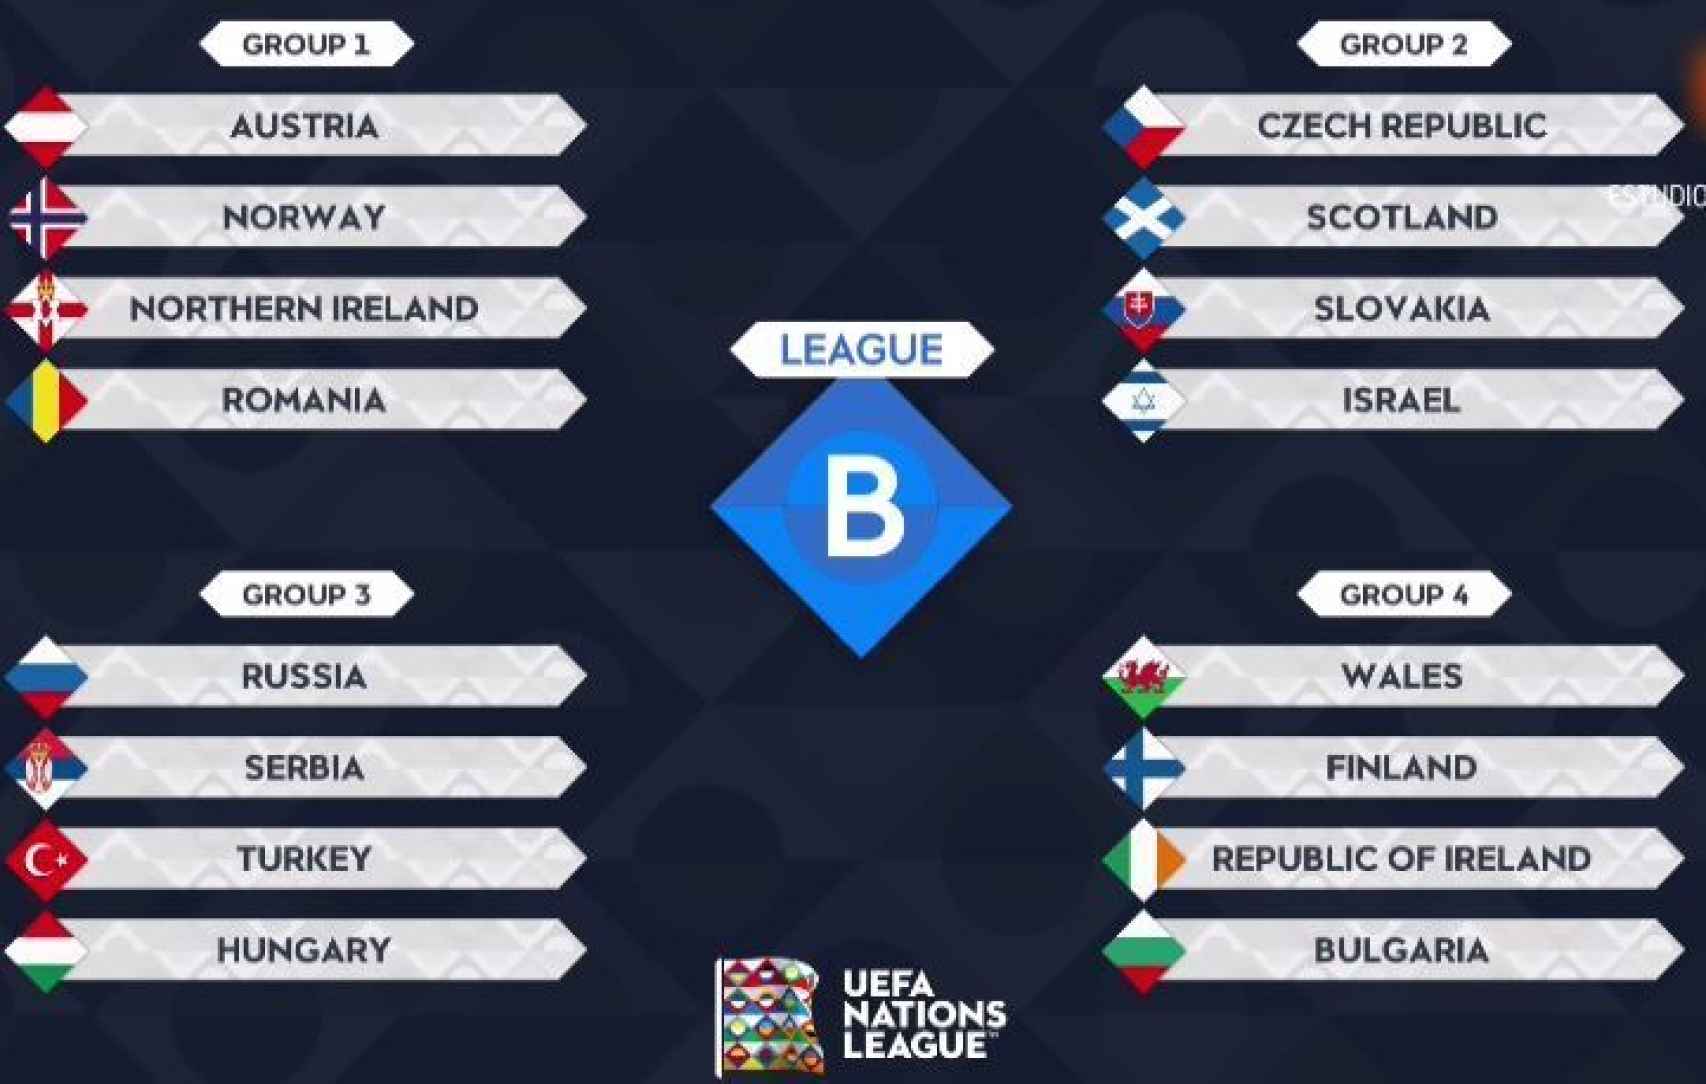 Групповой этап 1 4. Финал 4 лига наций. Лига наций турнирная сетка. UEFA Nations League чемпионы. Лига наций 2021 таблица.